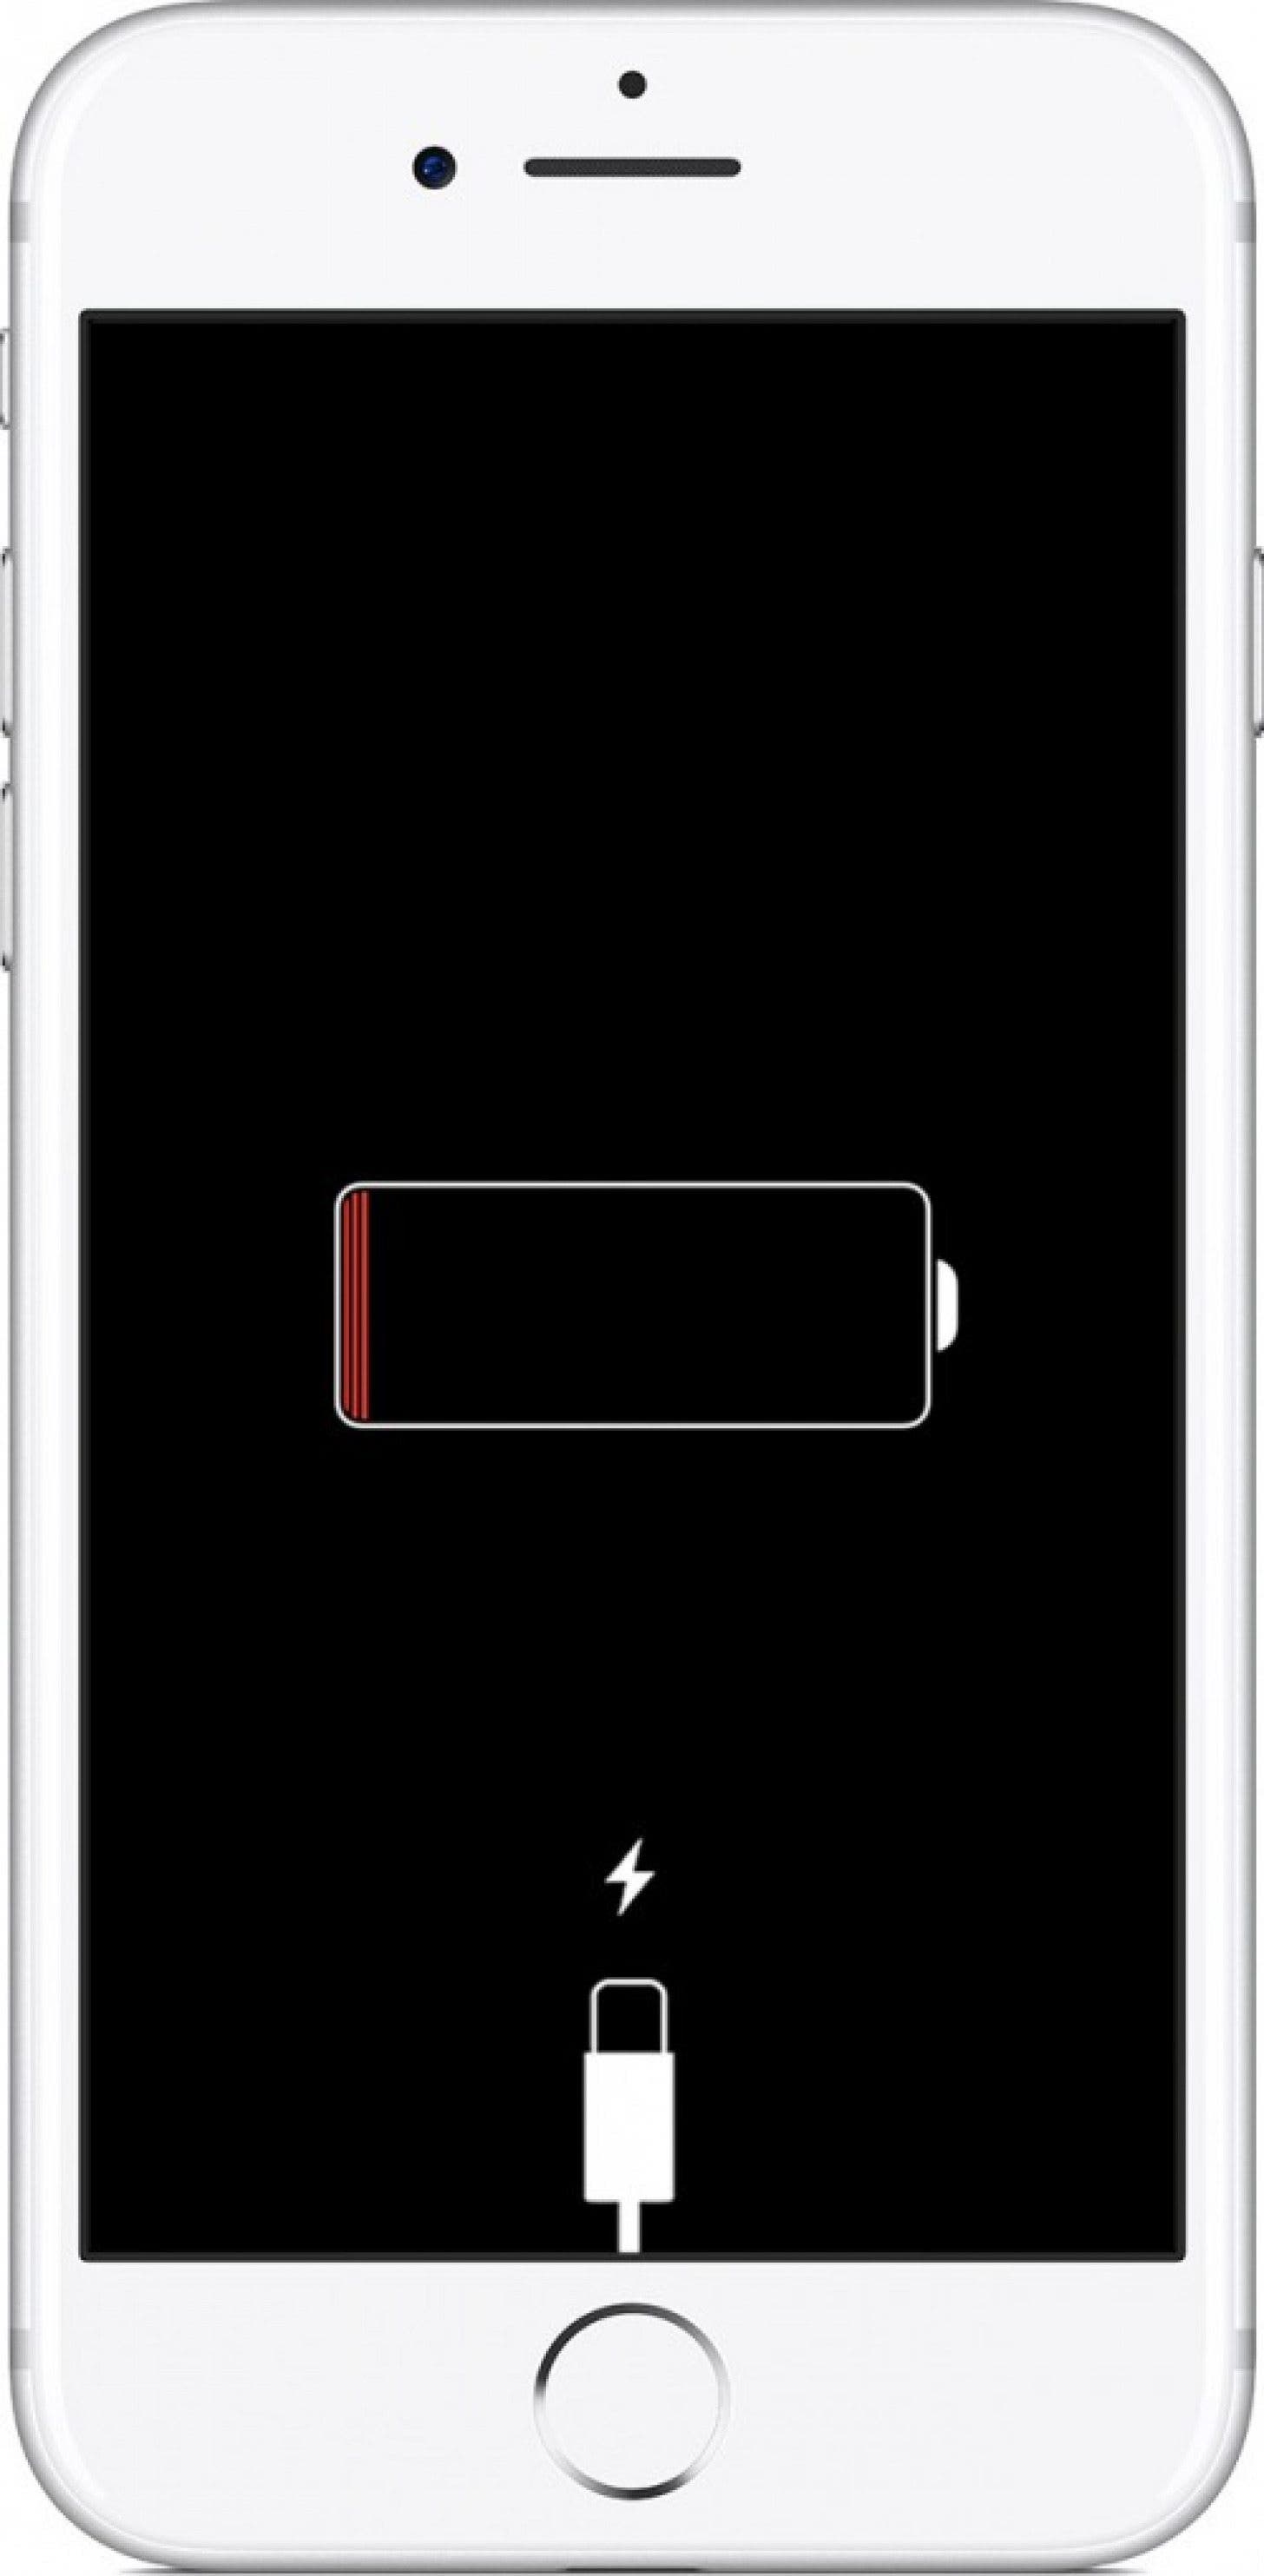 Виключіть розряджену батарею, підключивши телефон до мережі, щоб перевірити, чи він заряджається; Ви також можете спробувати інший зарядний пристрій, якщо ваш основний зарядний пристрій або кабель зламано.